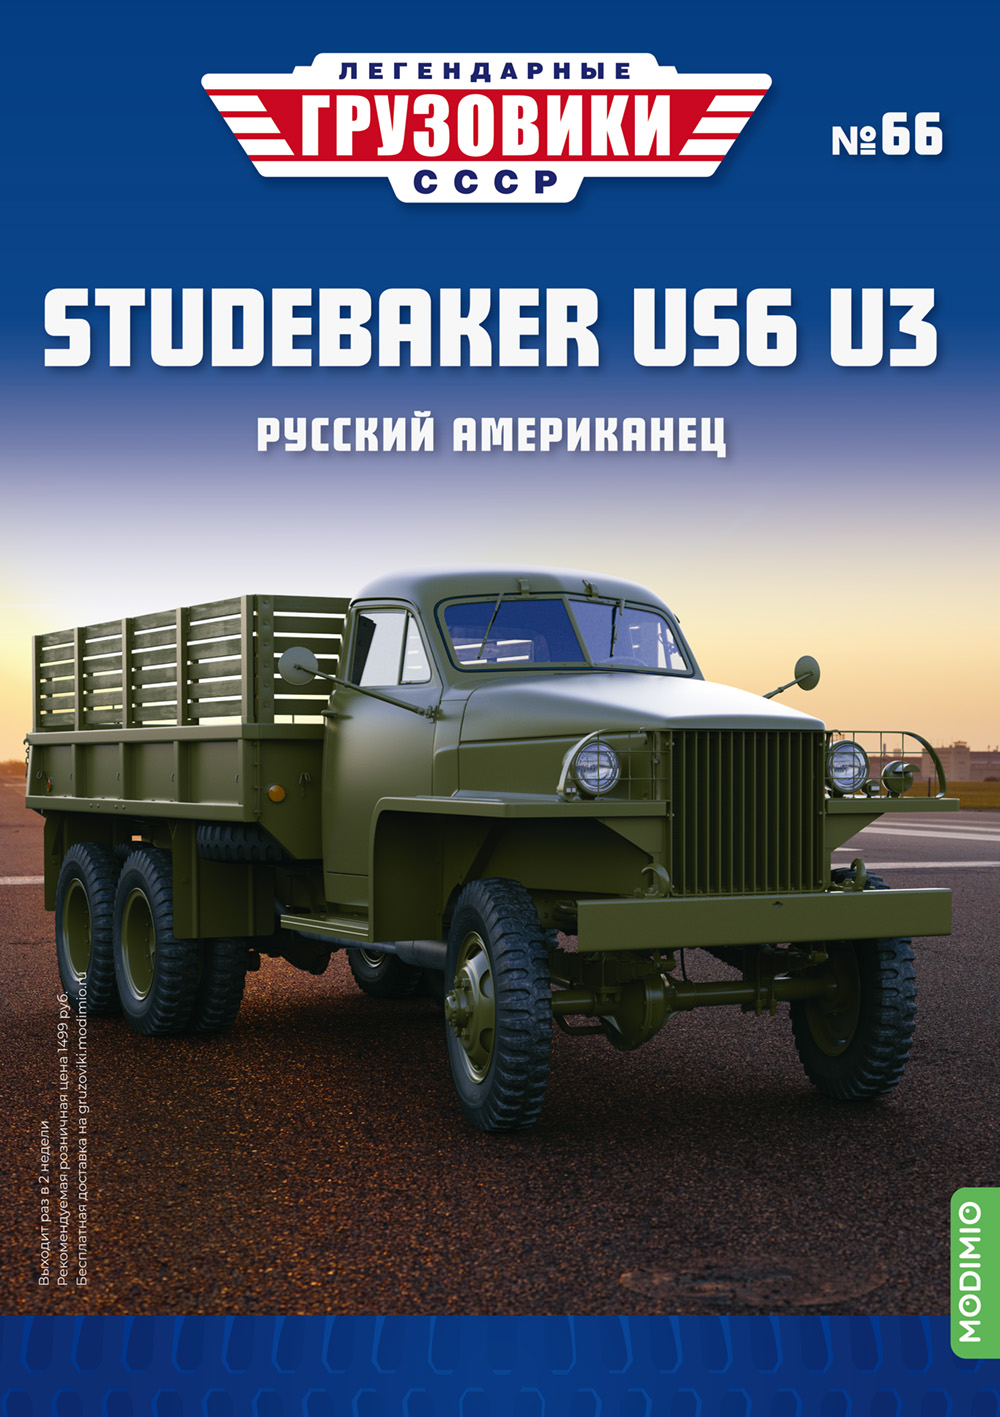 Легендарные грузовики СССР №66, Studebaker US6 U3